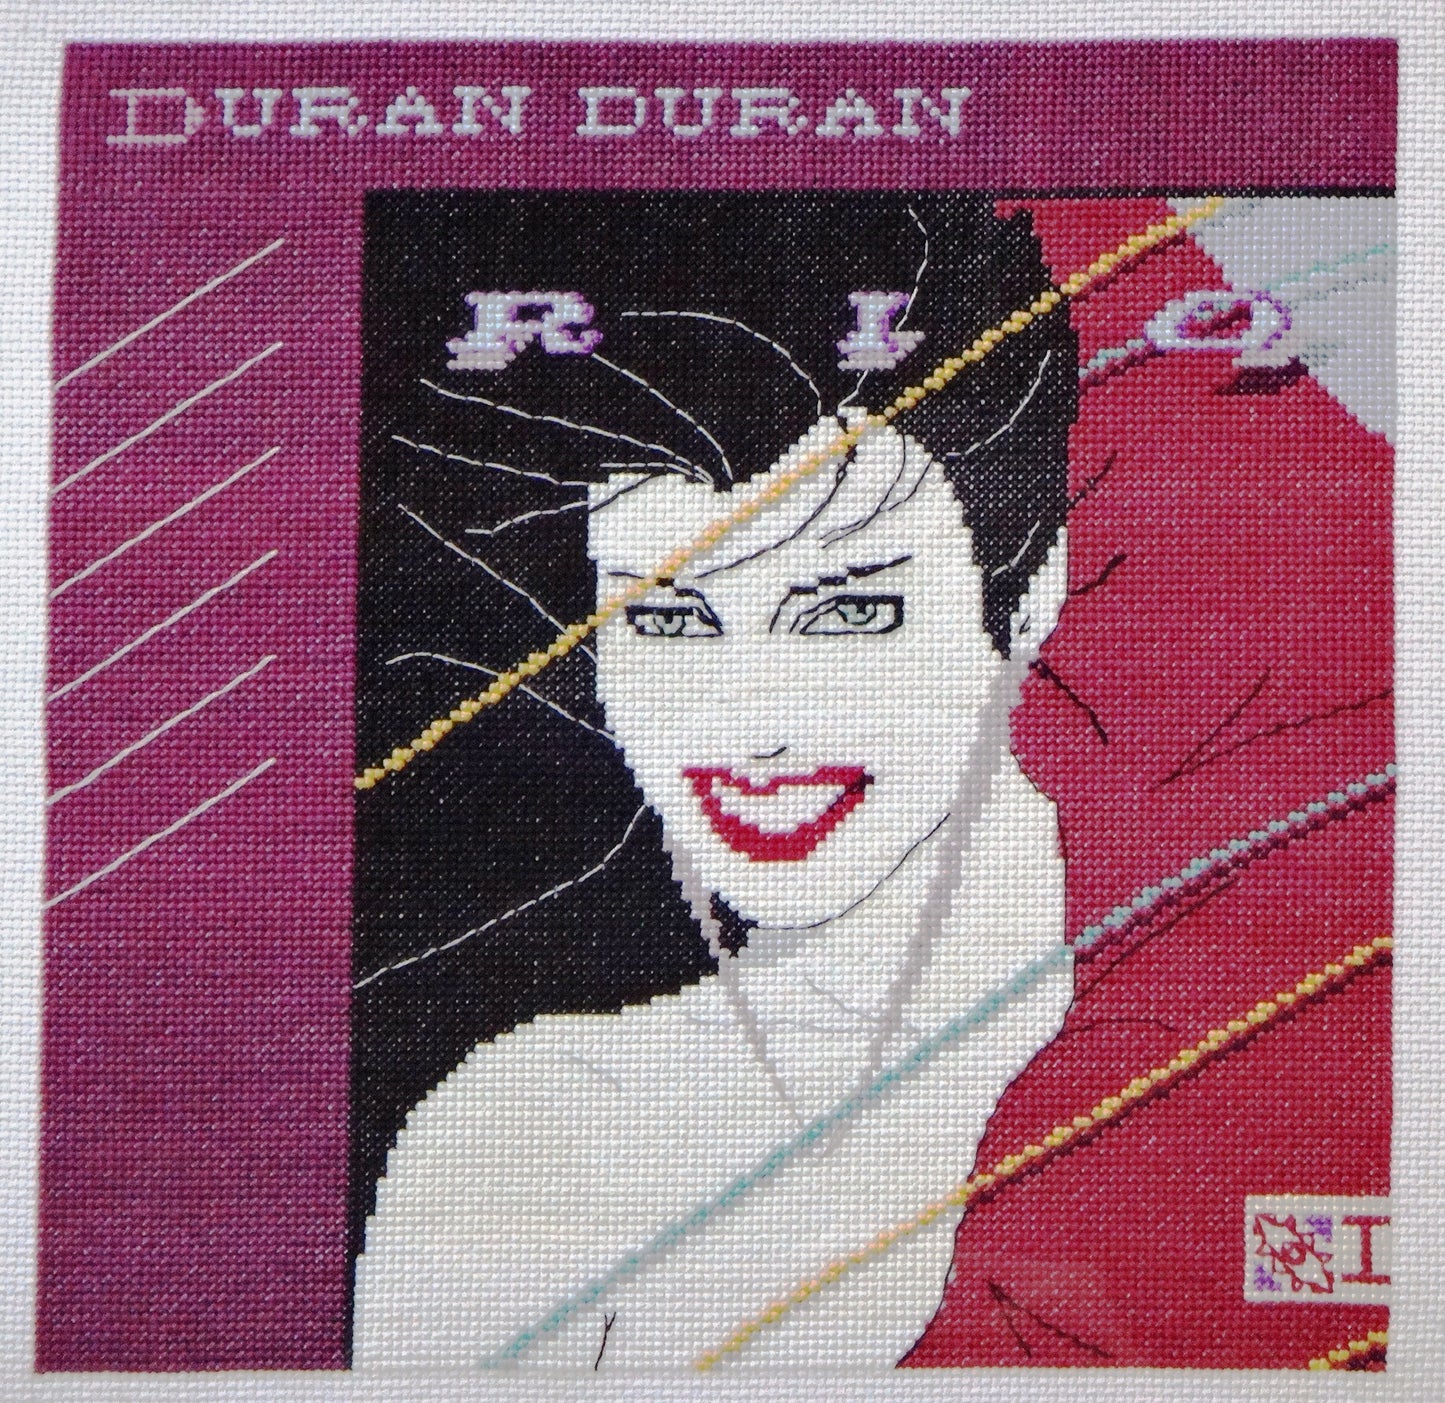 Duran Duran - Rio cross stitch pattern